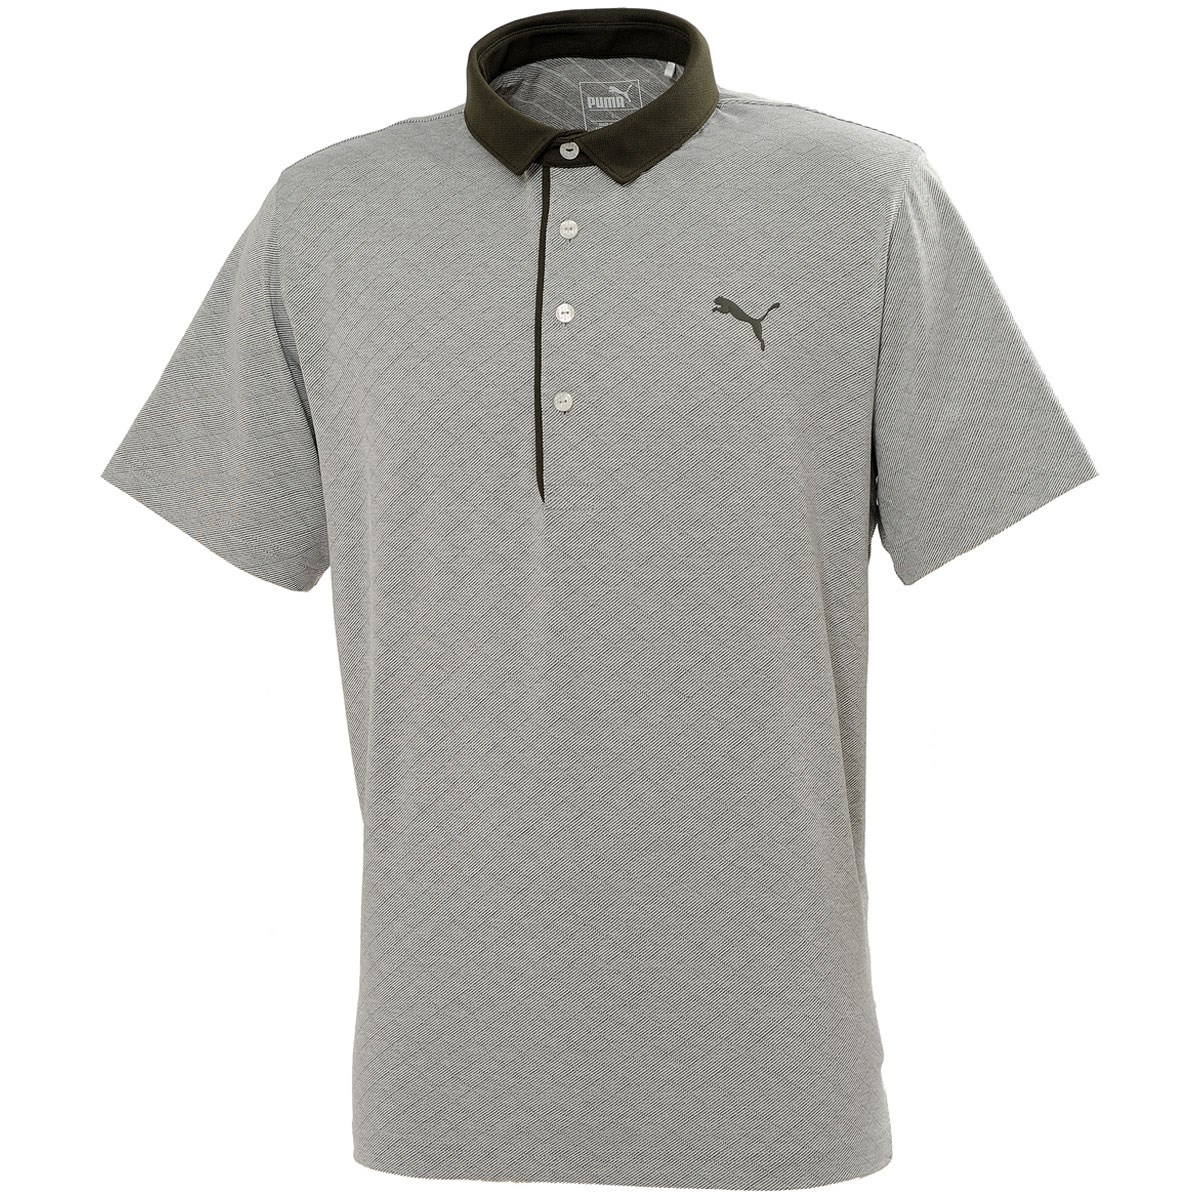  [更に値下げしました] プーマ ダイアモンド 半袖ポロシャツ ゴルフウェア